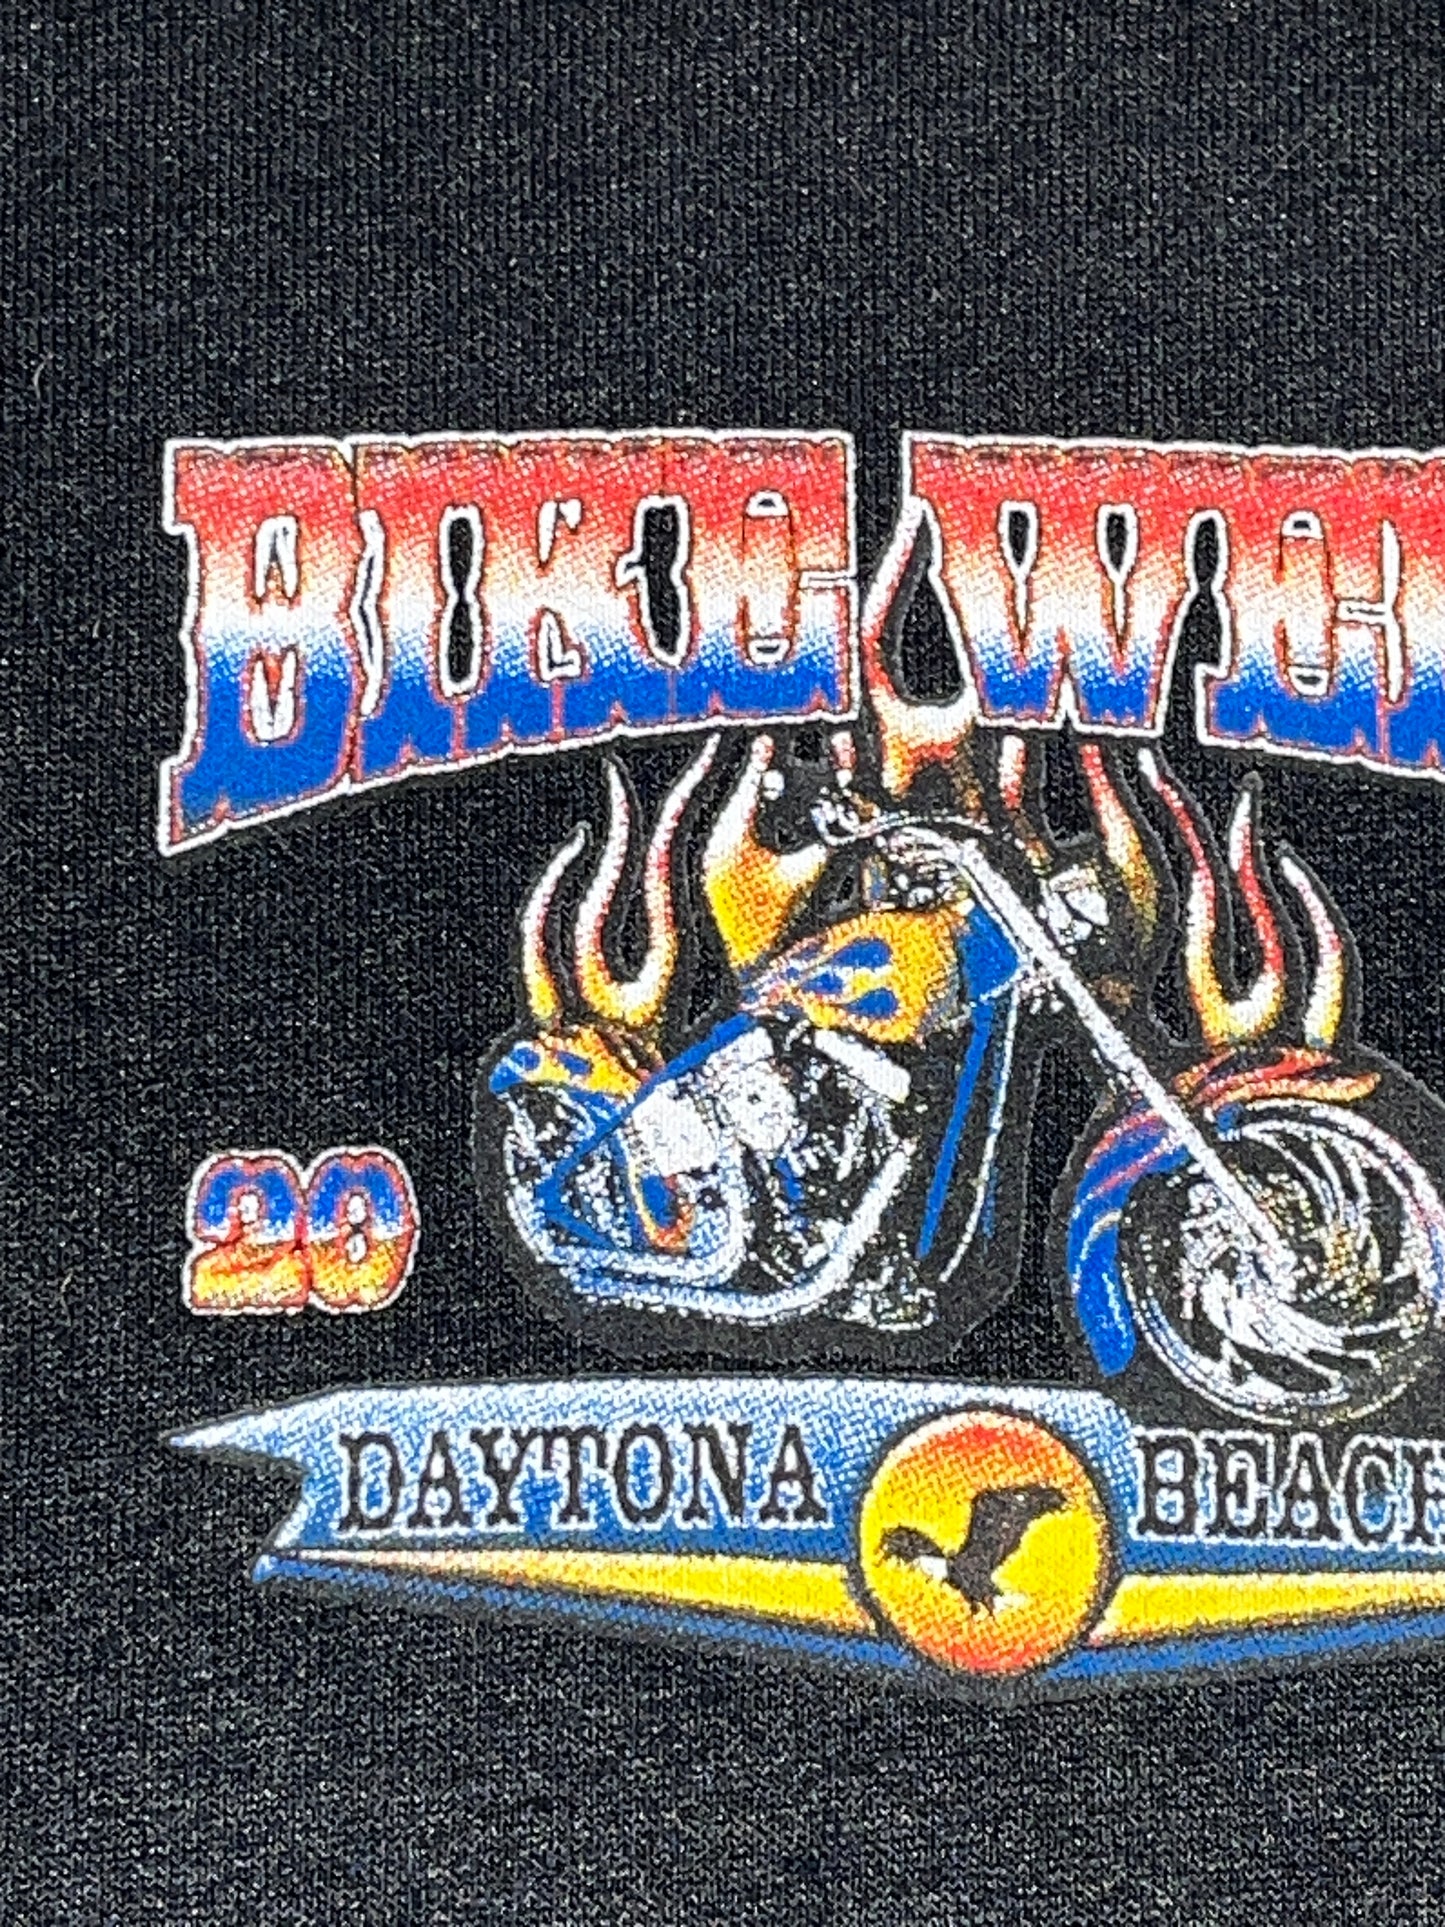 Vintage Bike Week T-Shirt Daytona Beach